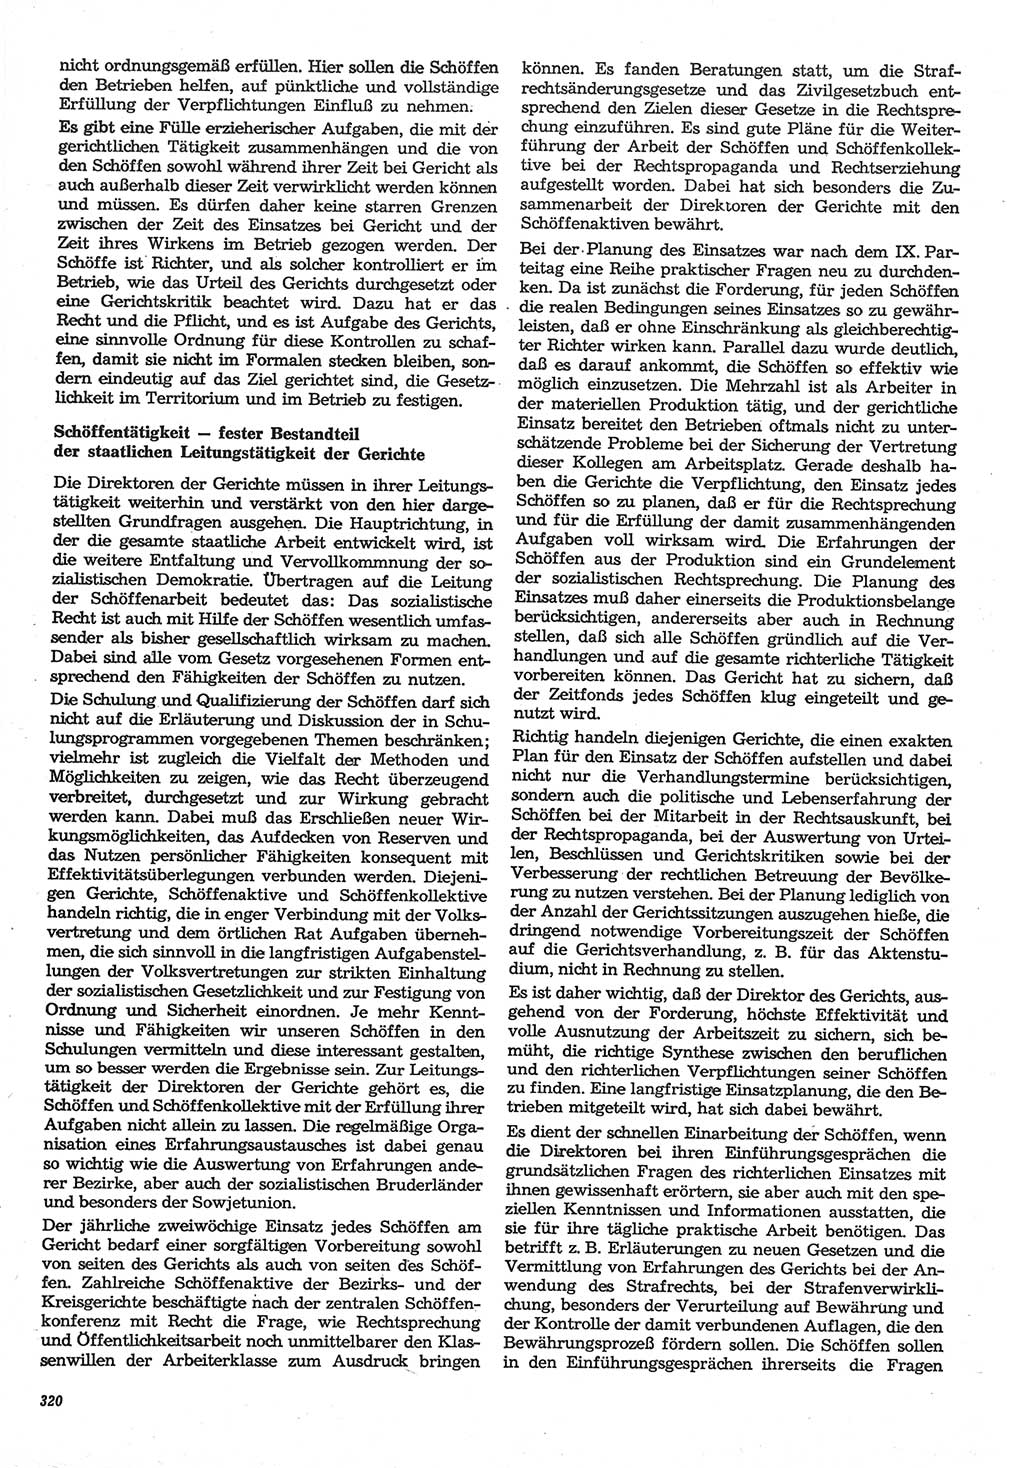 Neue Justiz (NJ), Zeitschrift für Recht und Rechtswissenschaft-Zeitschrift, sozialistisches Recht und Gesetzlichkeit, 31. Jahrgang 1977, Seite 320 (NJ DDR 1977, S. 320)